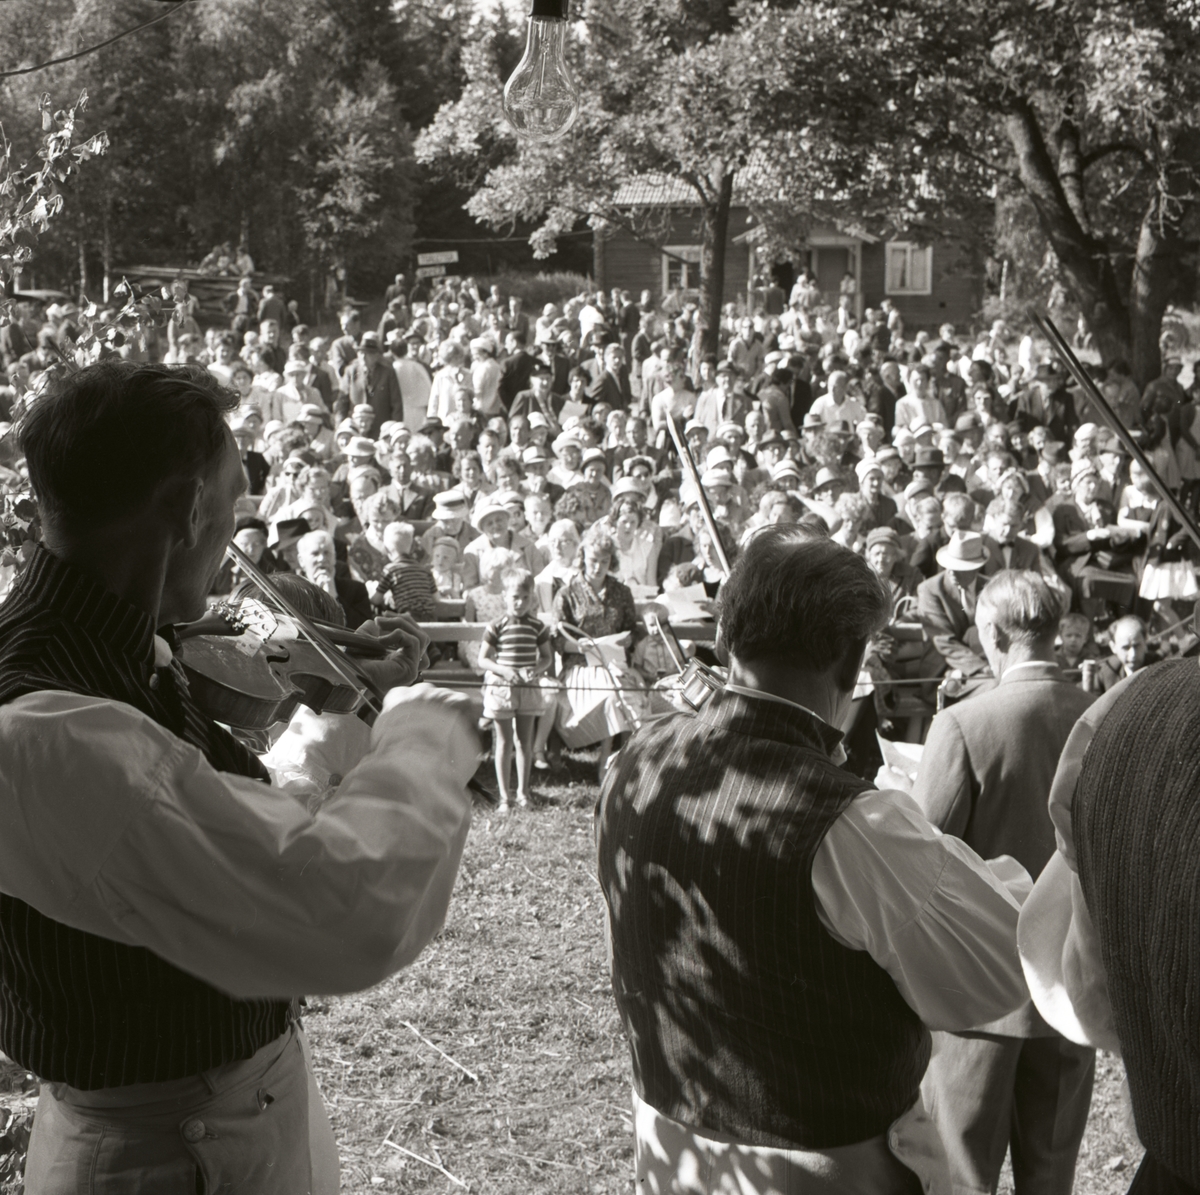 Spelmän uppträder inför en publik under Hembygdsfesten i Rengsjö , 22 juli 1962.